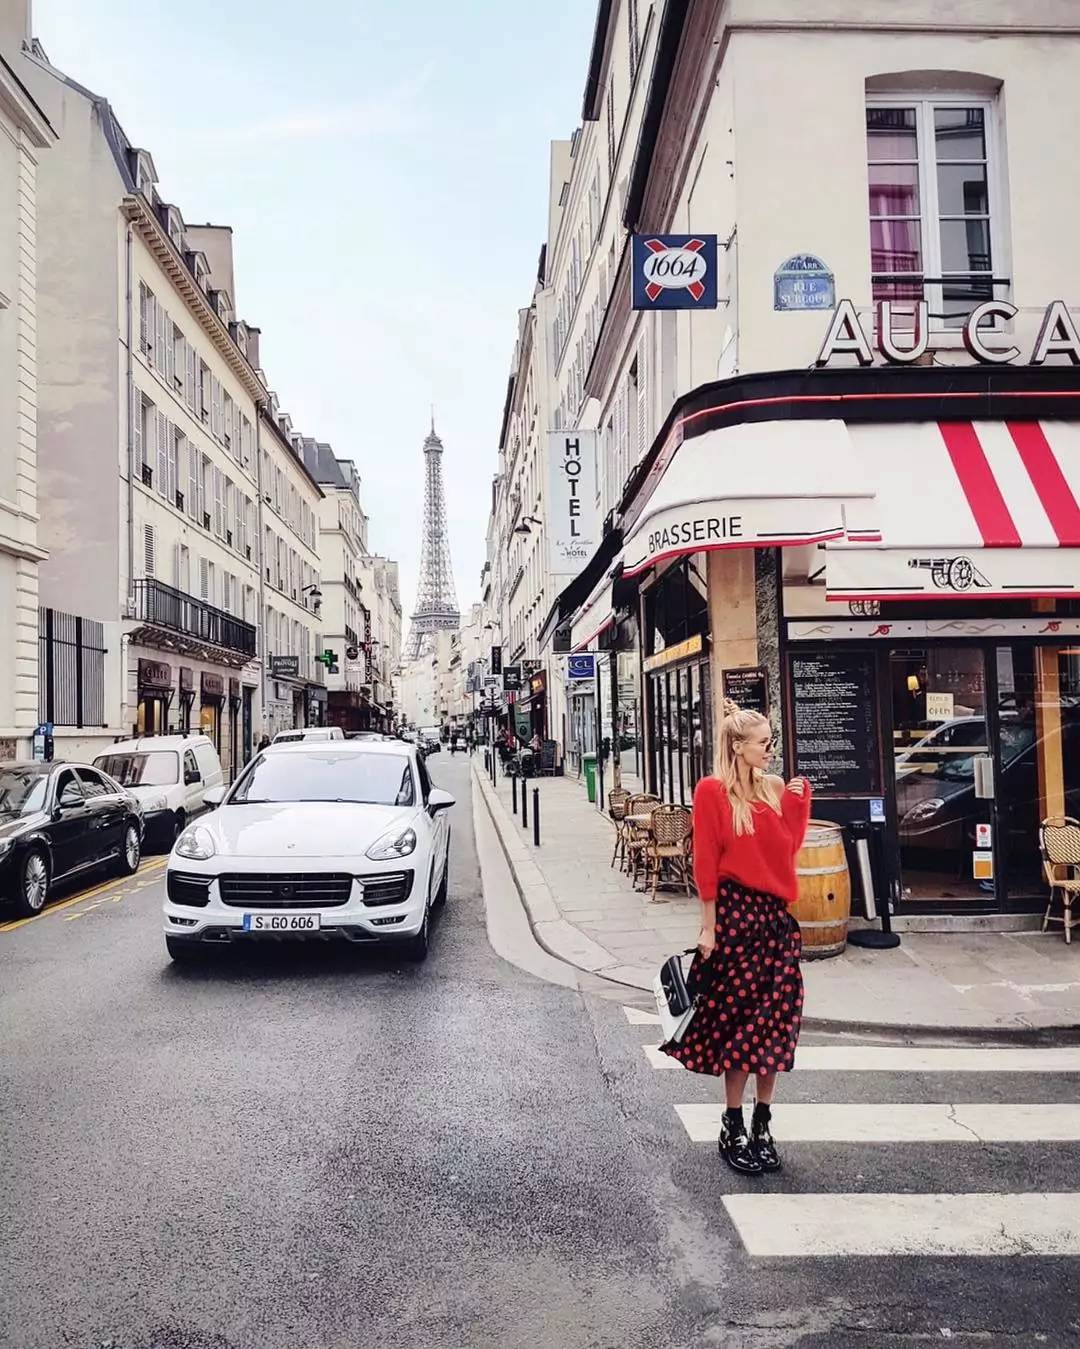 巴黎街头最尾端若隐若现埃菲尔铁塔的身影,街的另一头是用红色点亮这